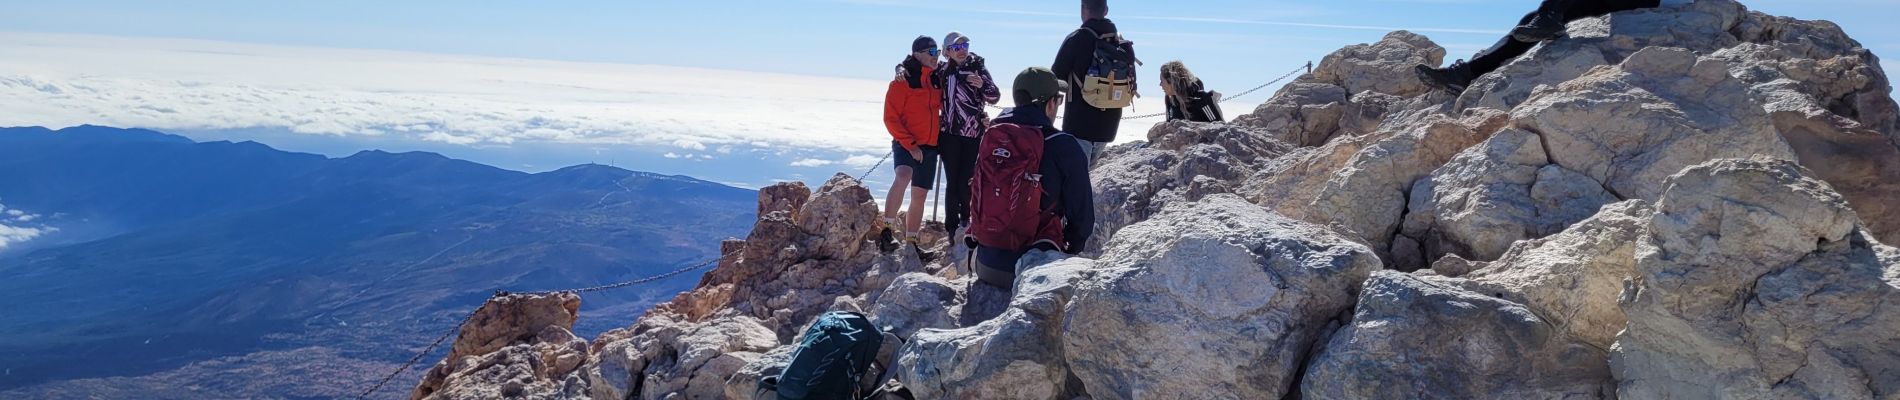 Randonnée Marche La Orotava - Sommet du Teide - Photo